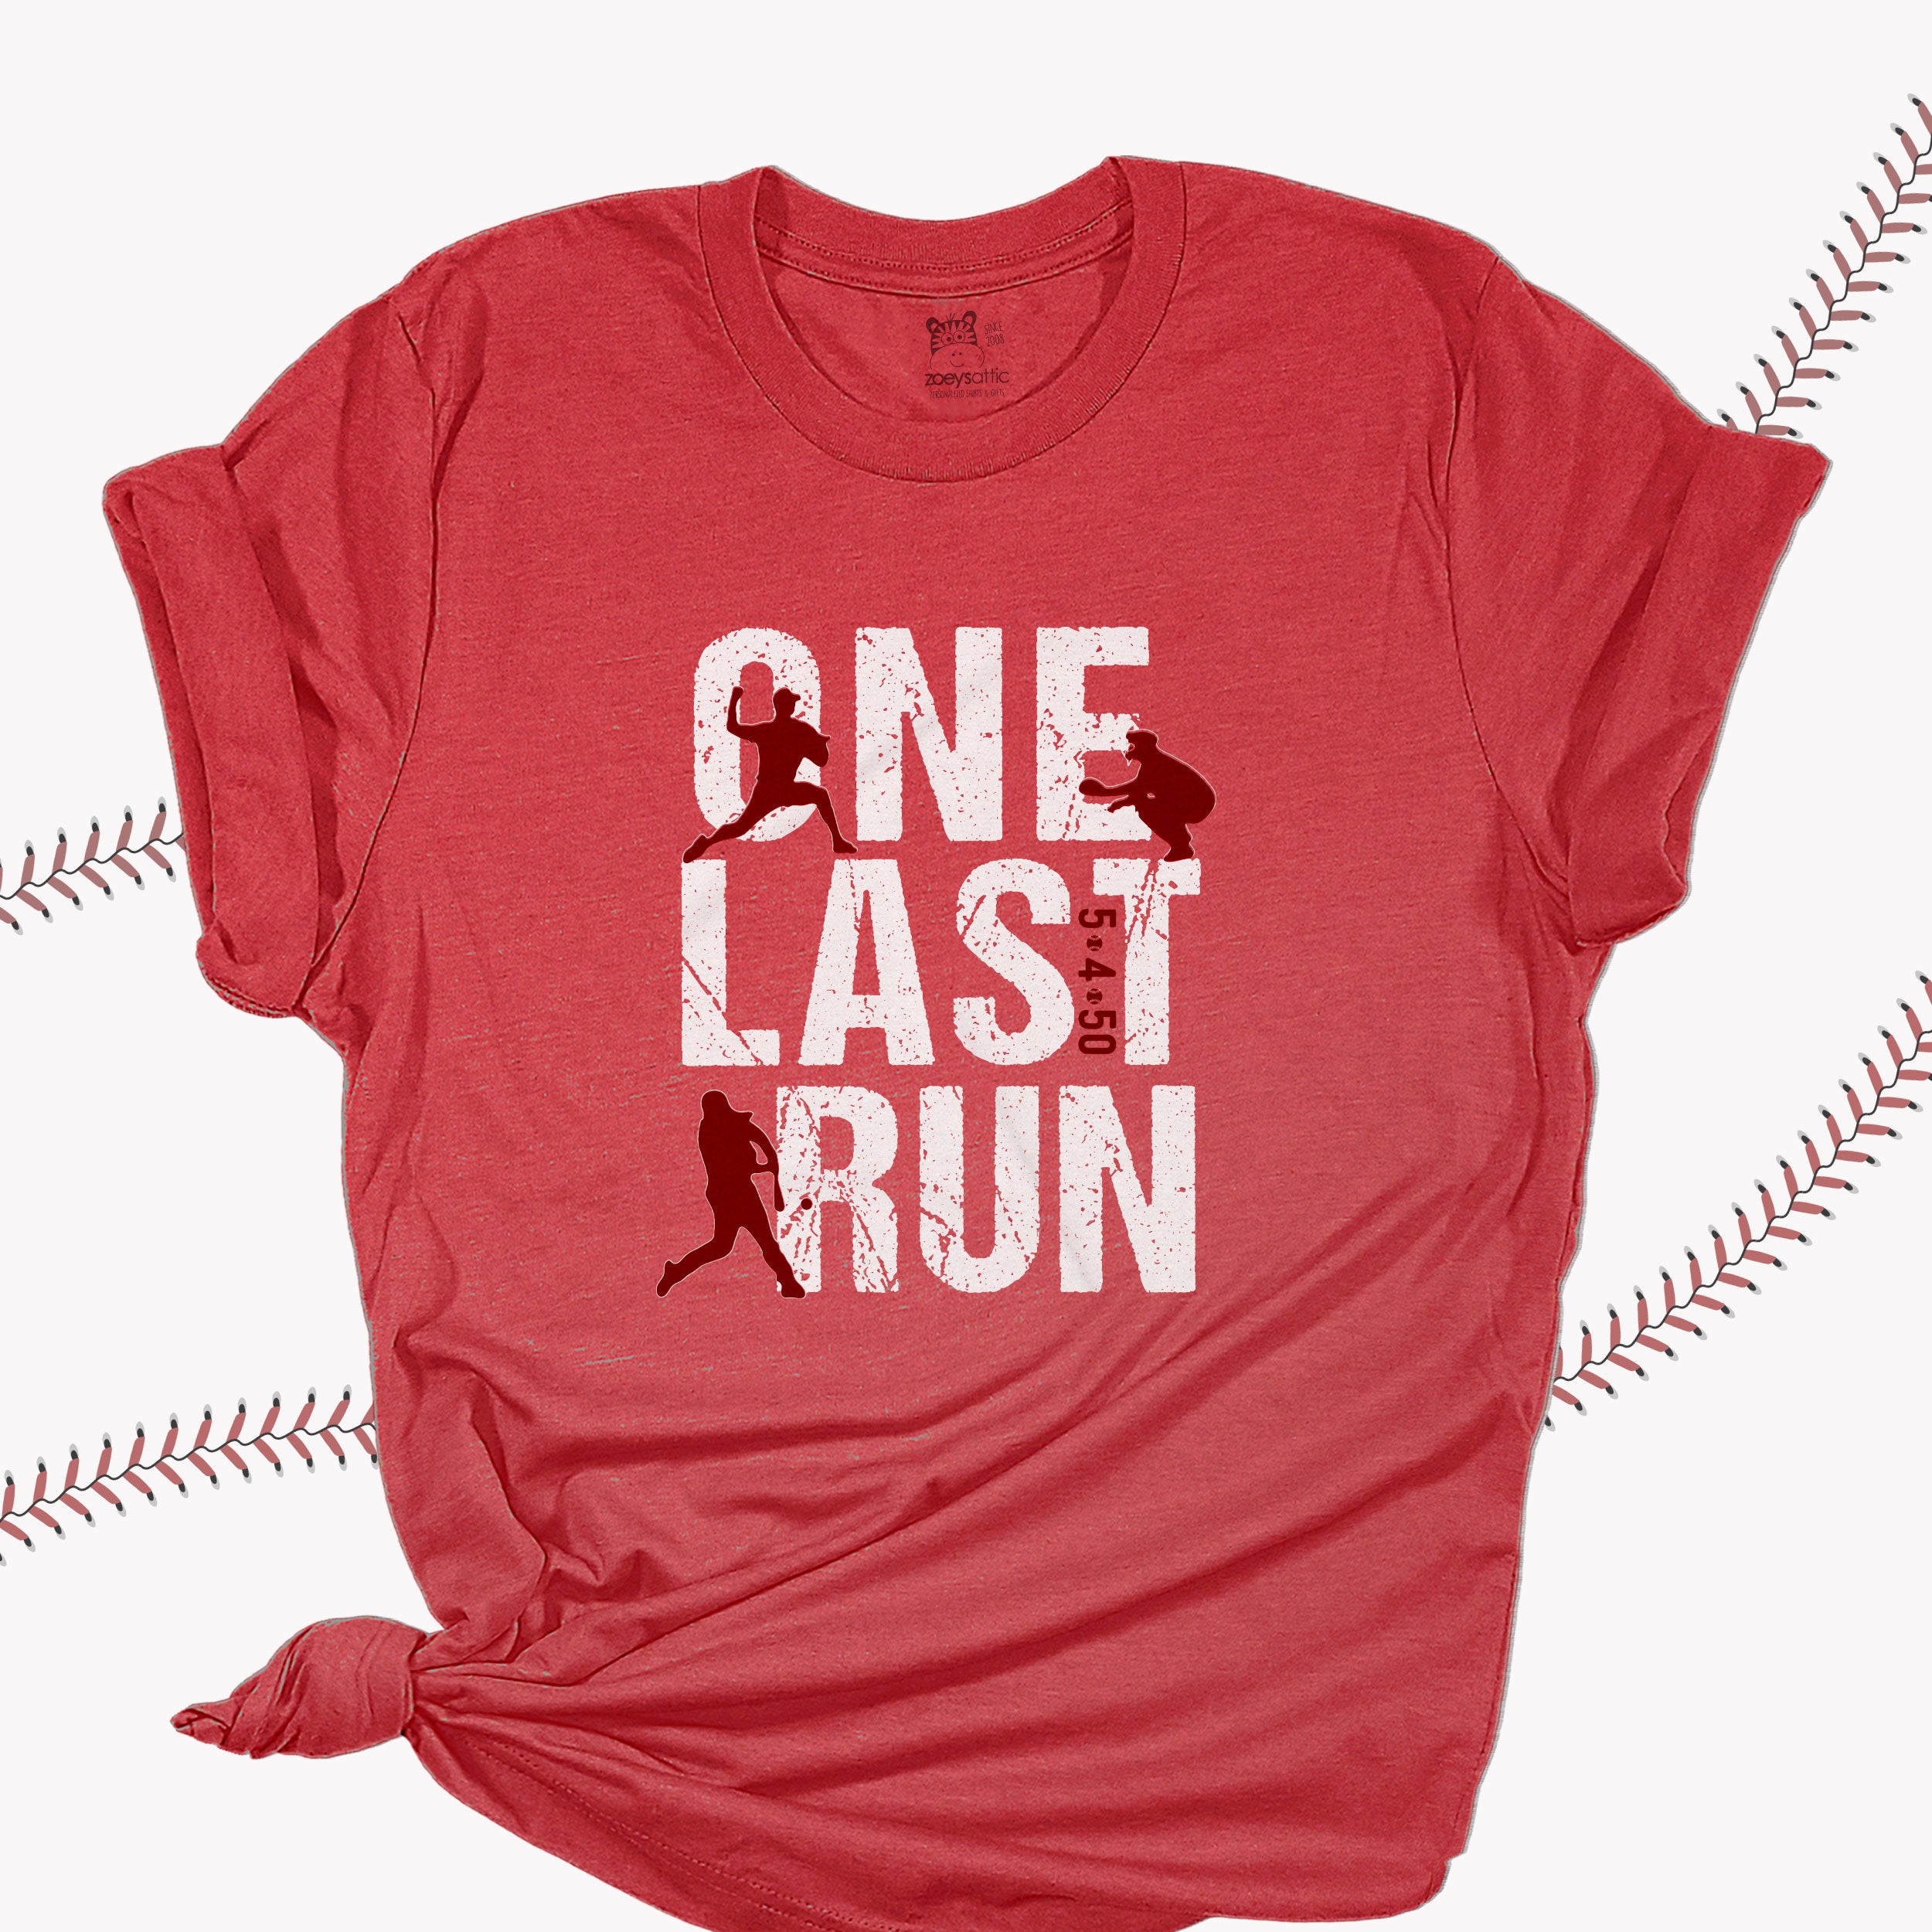 St Louis Cardinals The Last Run Shirt The Final Ride Shirt Baseball Legends  Gift The Last